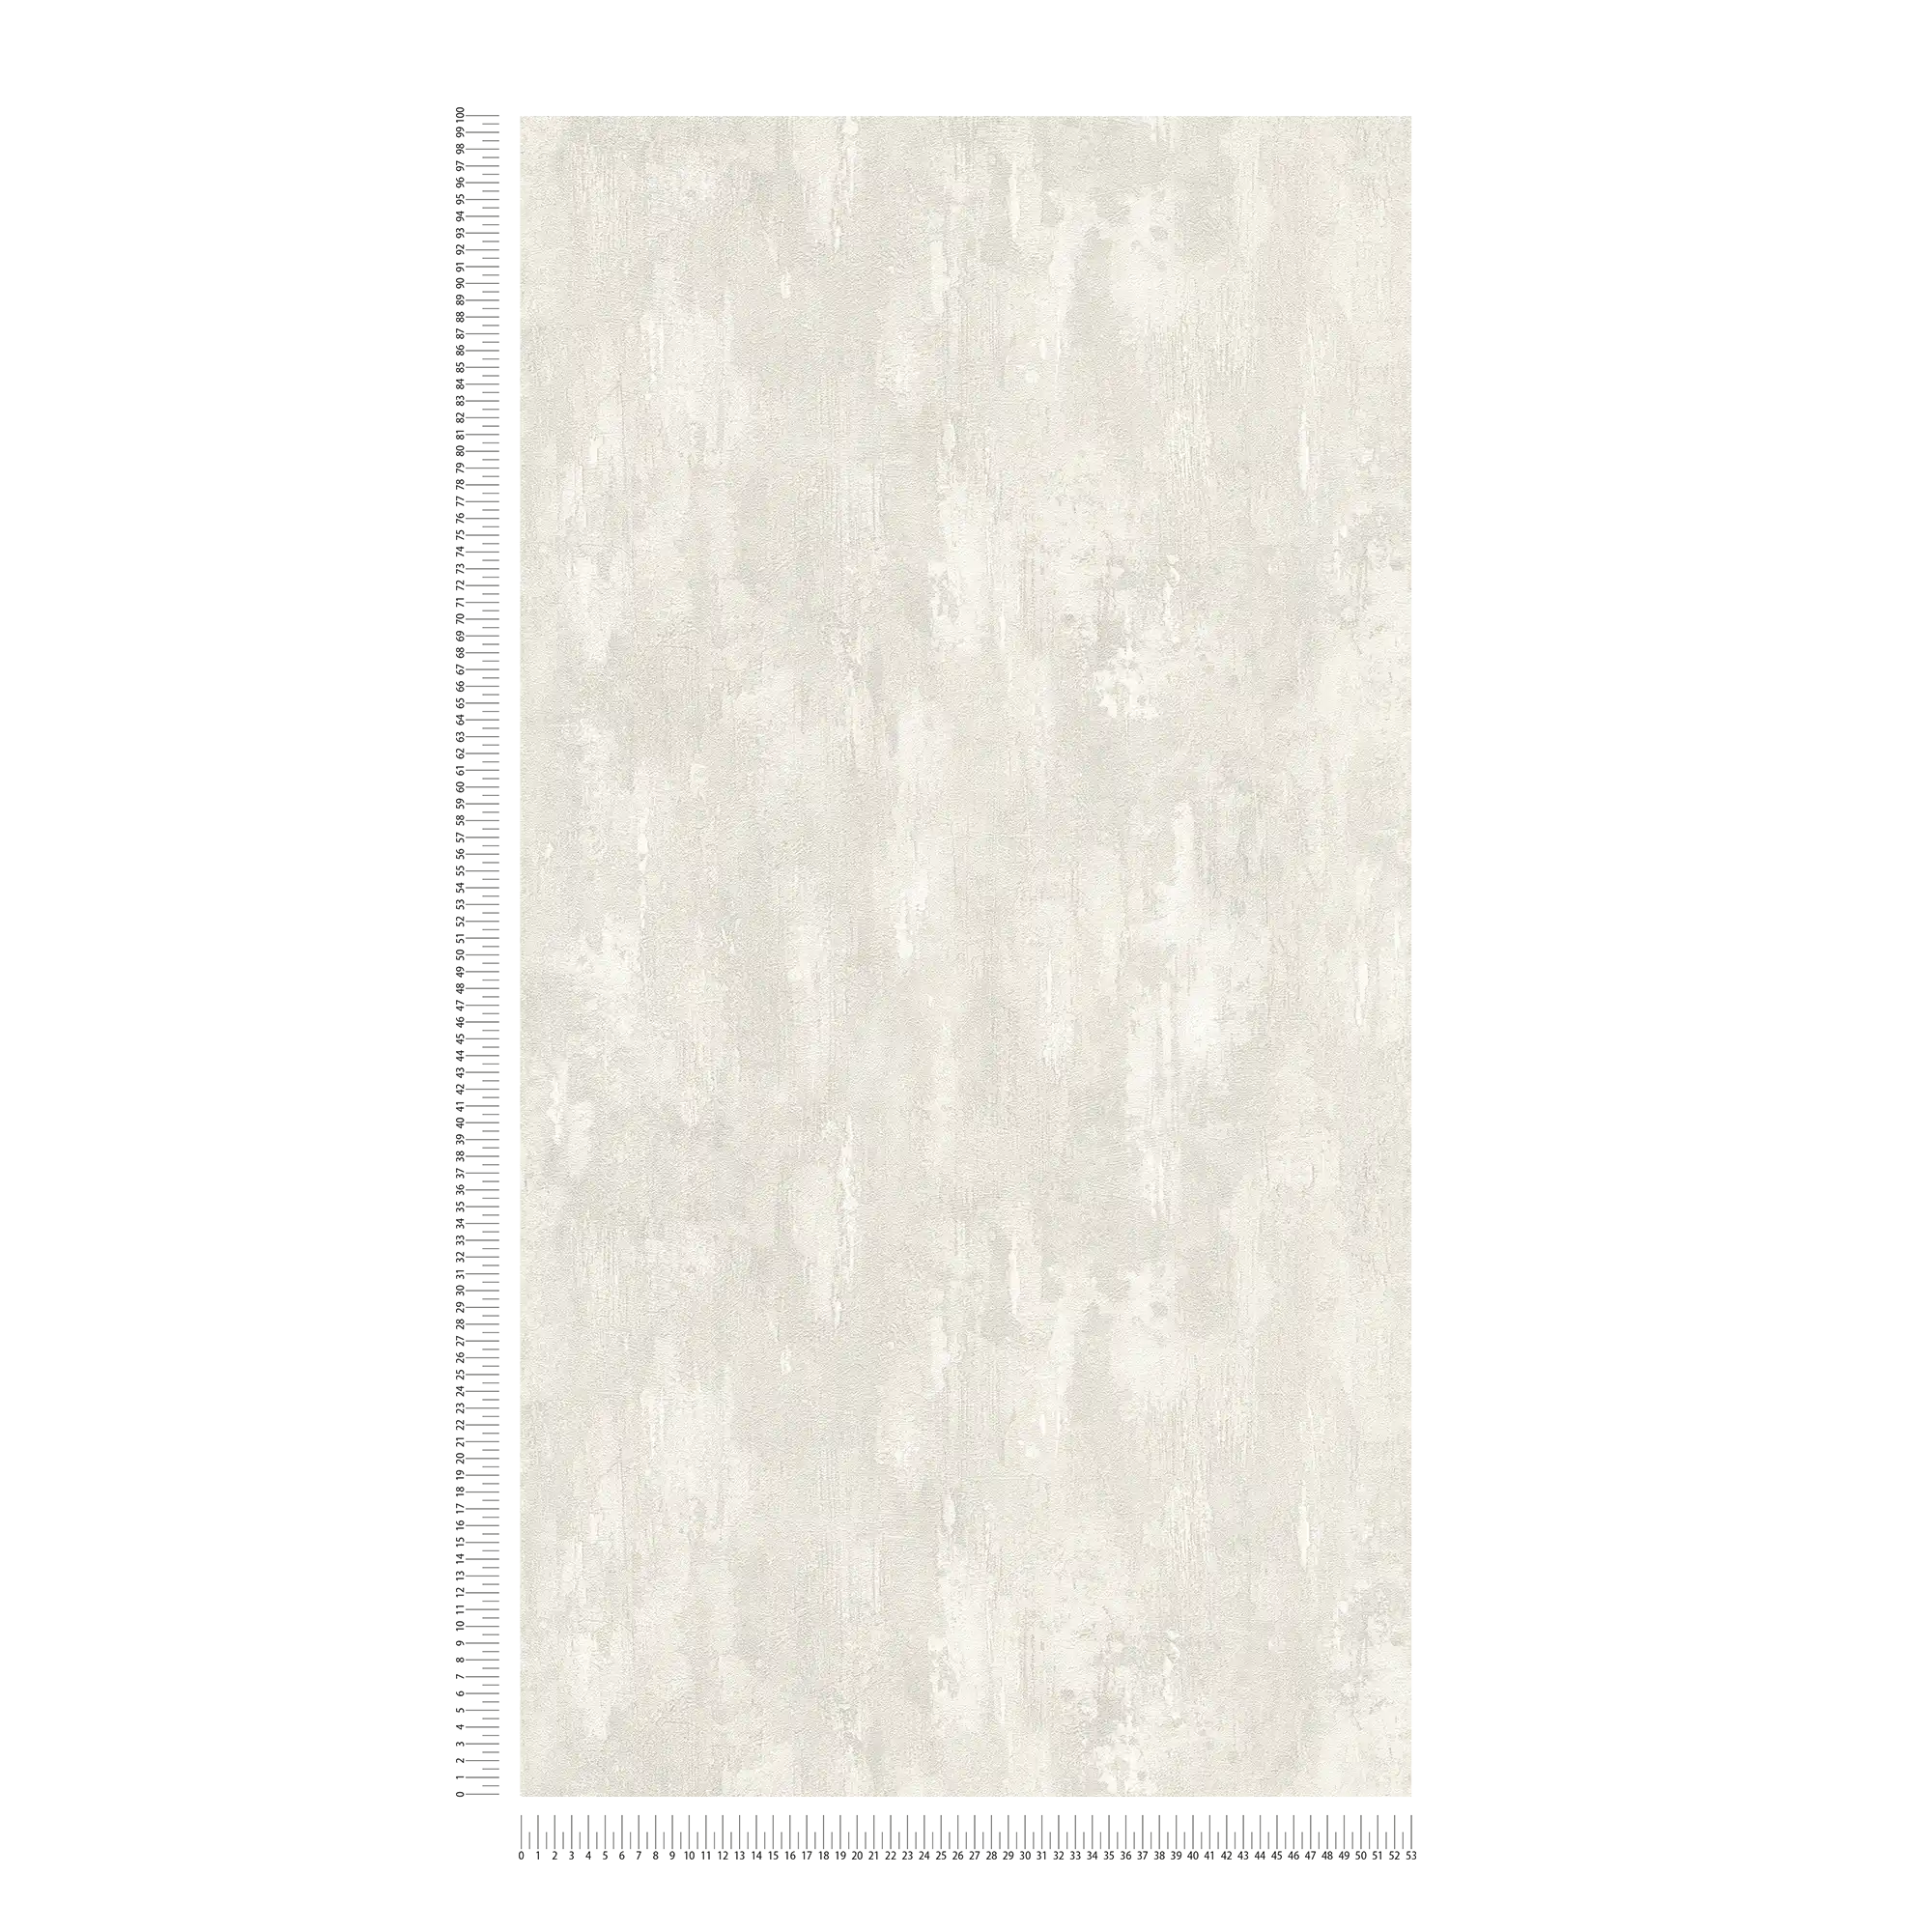             Behang met gipsstructuur, betonlook en kleurverloop - grijs, wit
        